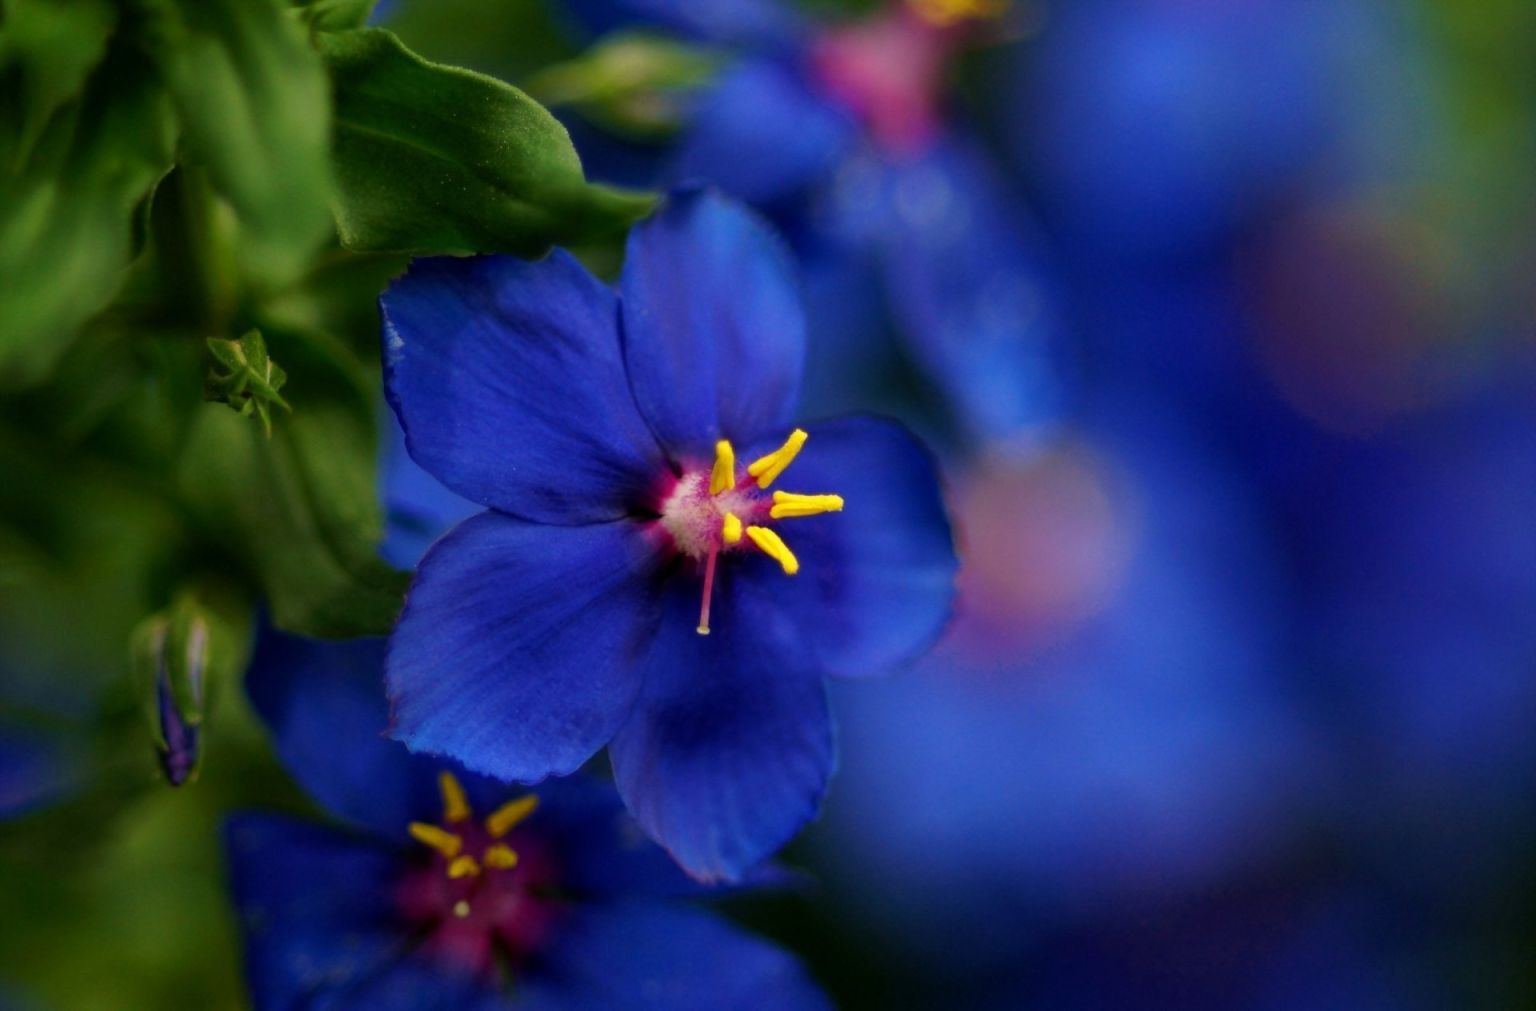 Цветы в голубых тонах